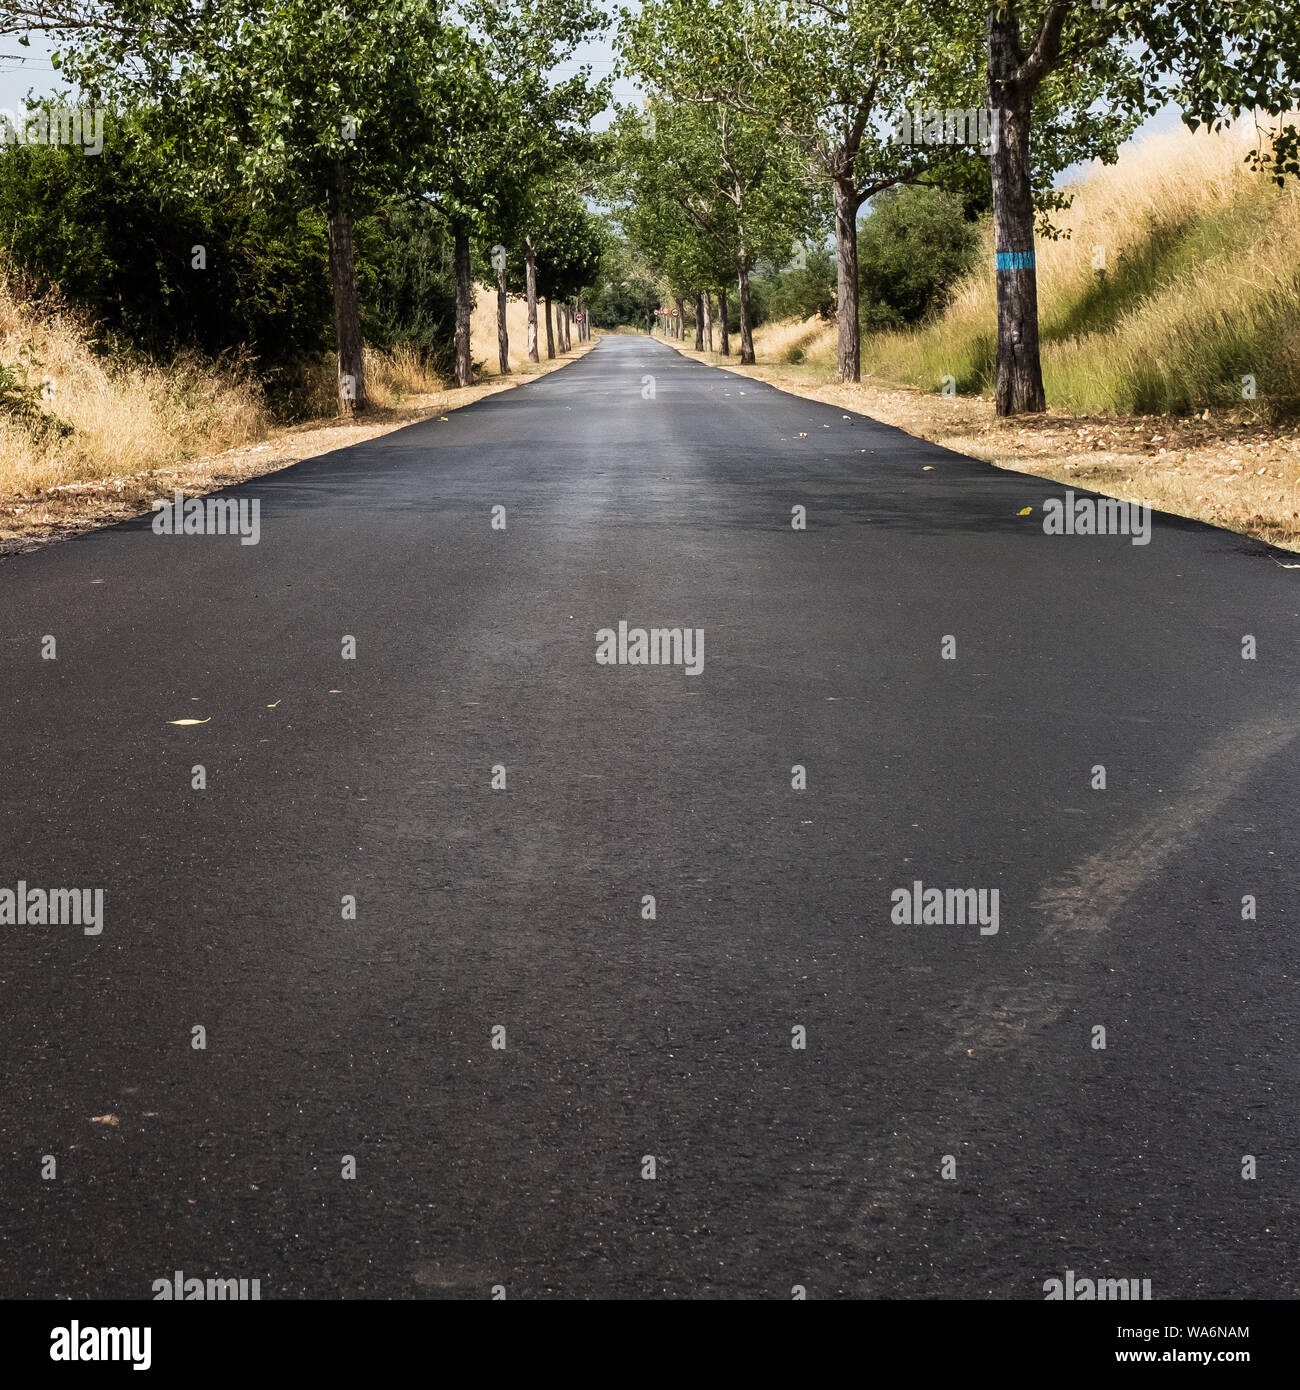 Paese di asfalto strada dritti e vuoto con alberi in corrispondenza dei bordi, bagnato a causa di piogge. Basso angolo di visione, copia spazio per il testo. Foto Stock